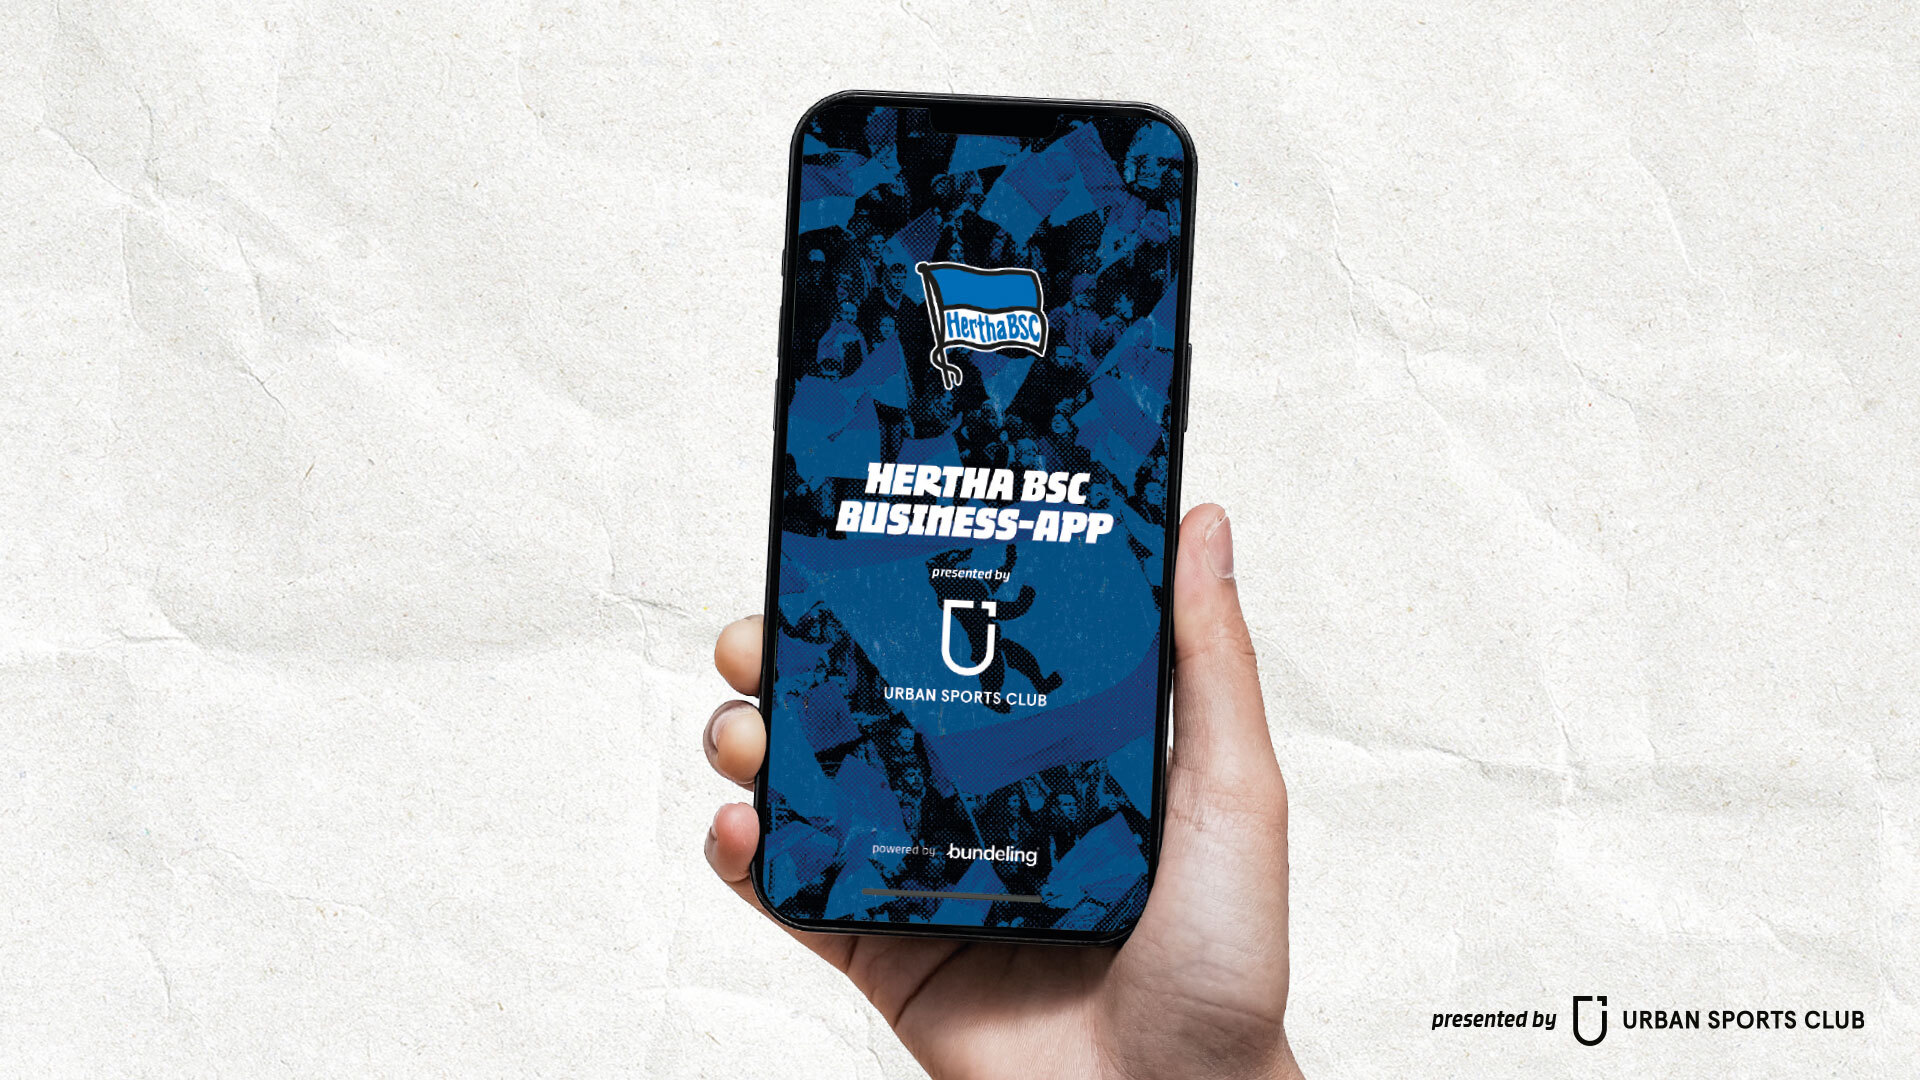 Das Handy in der Hand: Abgebildet ist hier die Hertha BSC Business-App presented by Urban Sports Club.